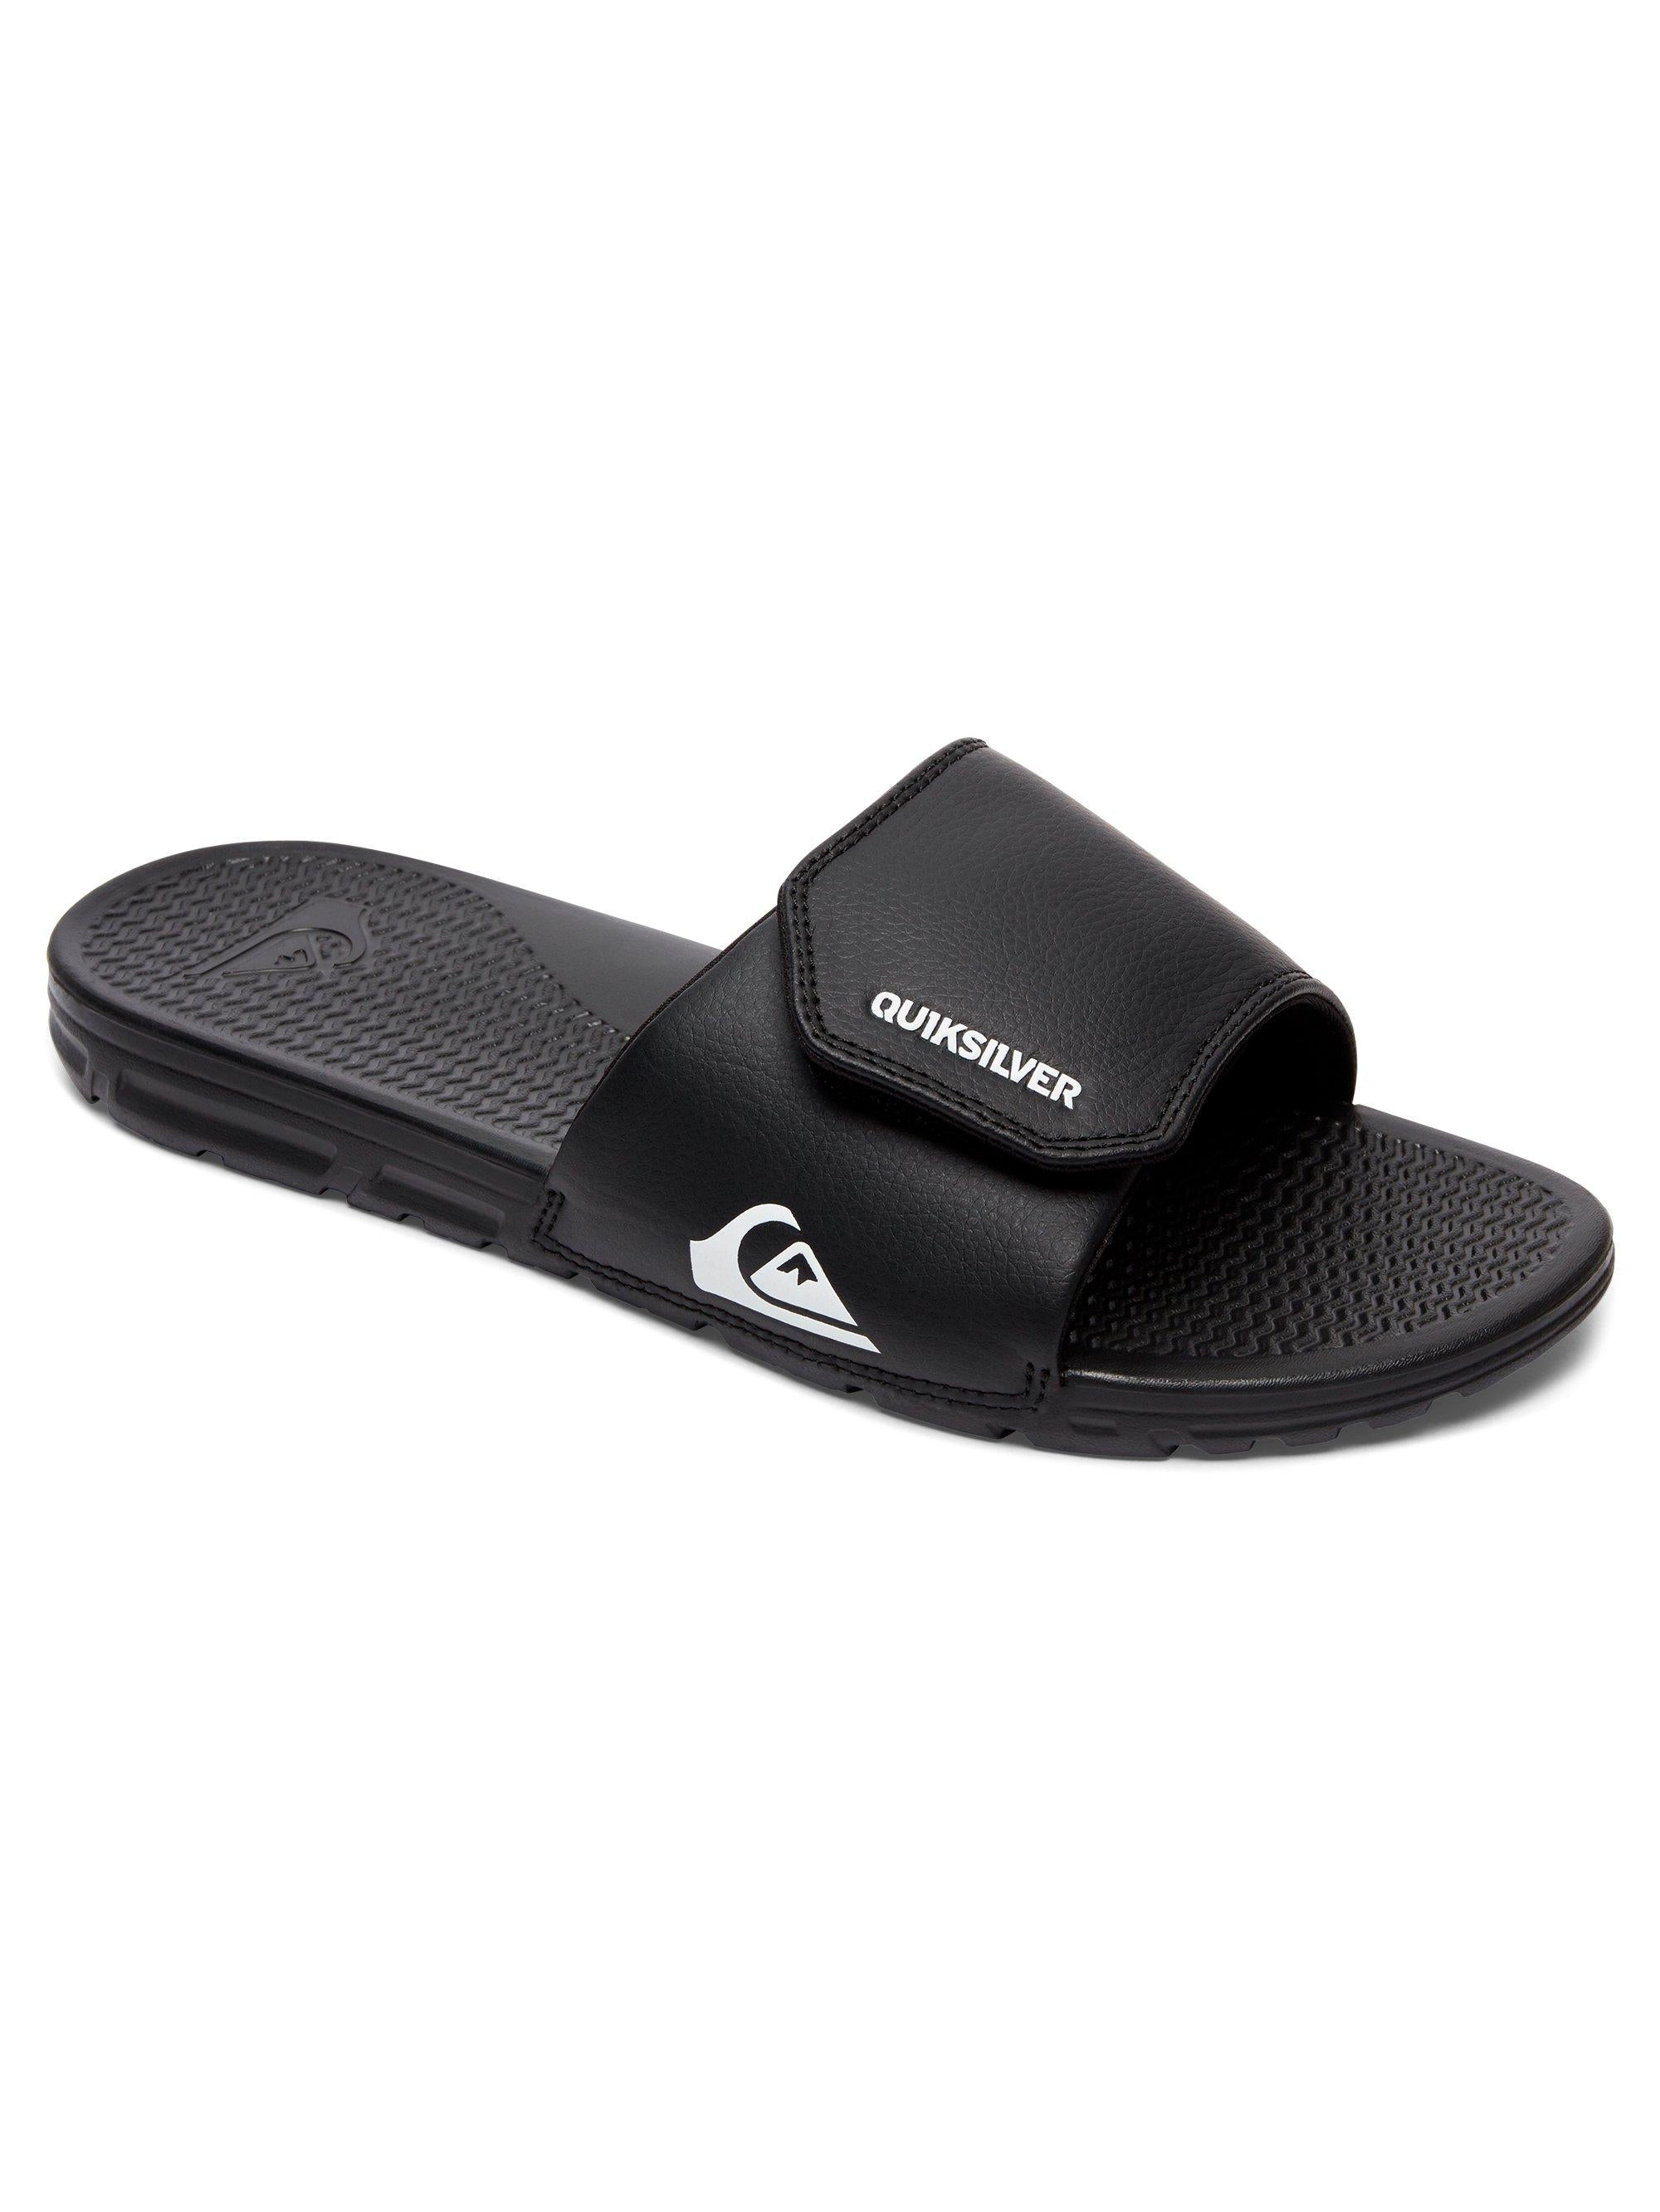 Quiksilver Shoreline Slide Flip Flop Adjustable - Black or White Logo